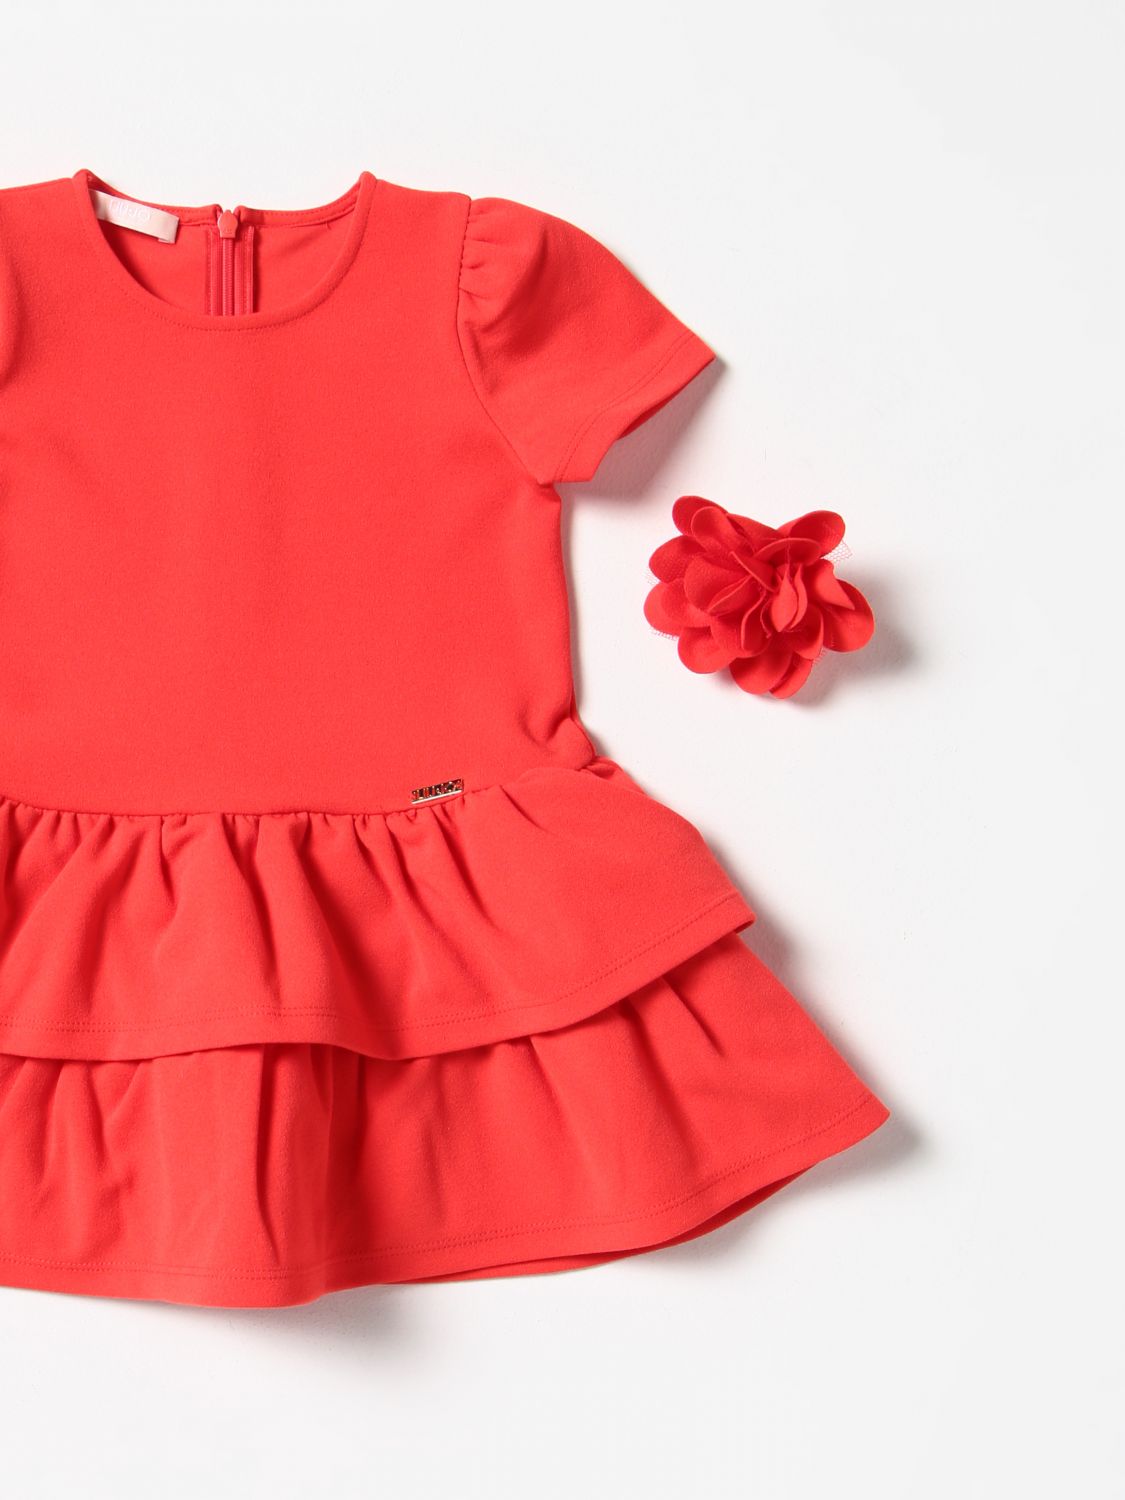 LIU JO KIDS: dress for girls - Coral | Liu Jo Kids dress KA3004J9986 ...